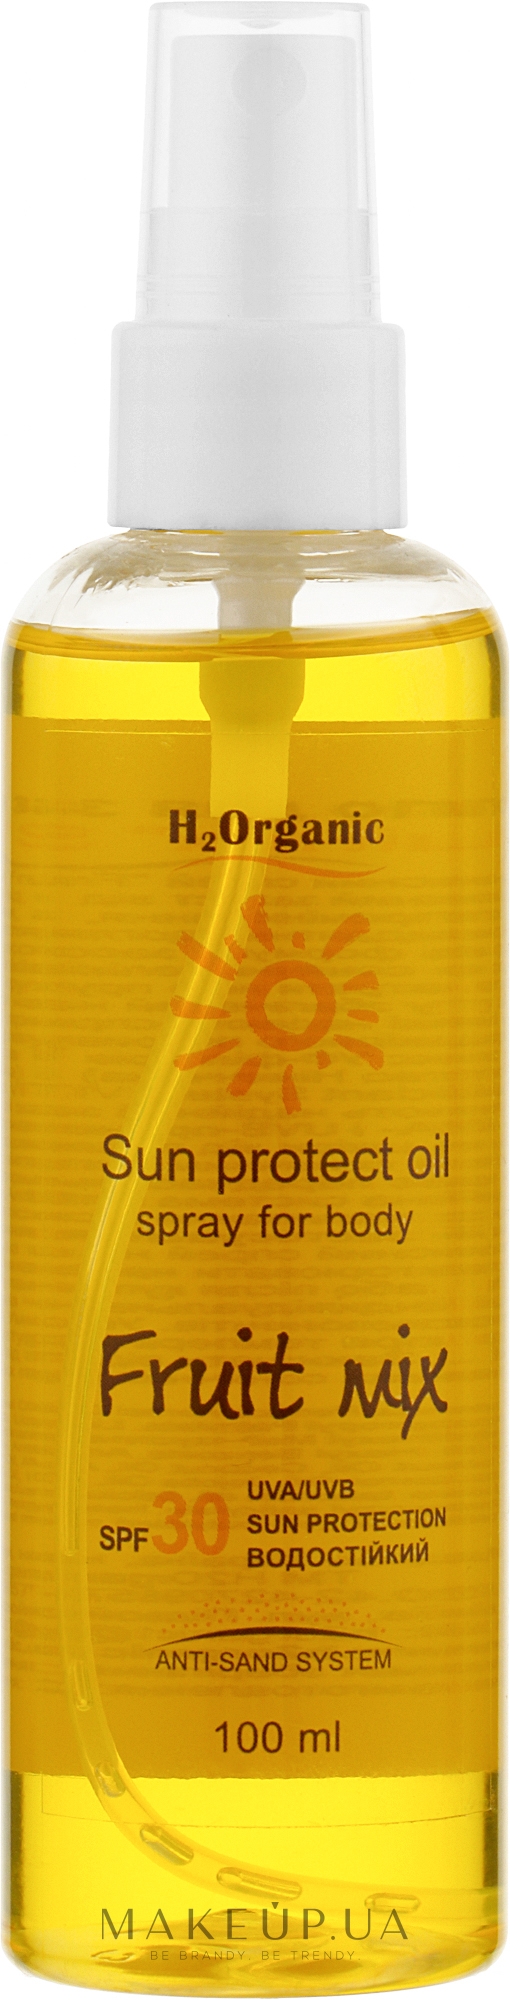 Сонцезахисний спрей для тіла SPF 30 - H2Organic Sun Protect Oil Fruit Mix SPF30 — фото 100ml